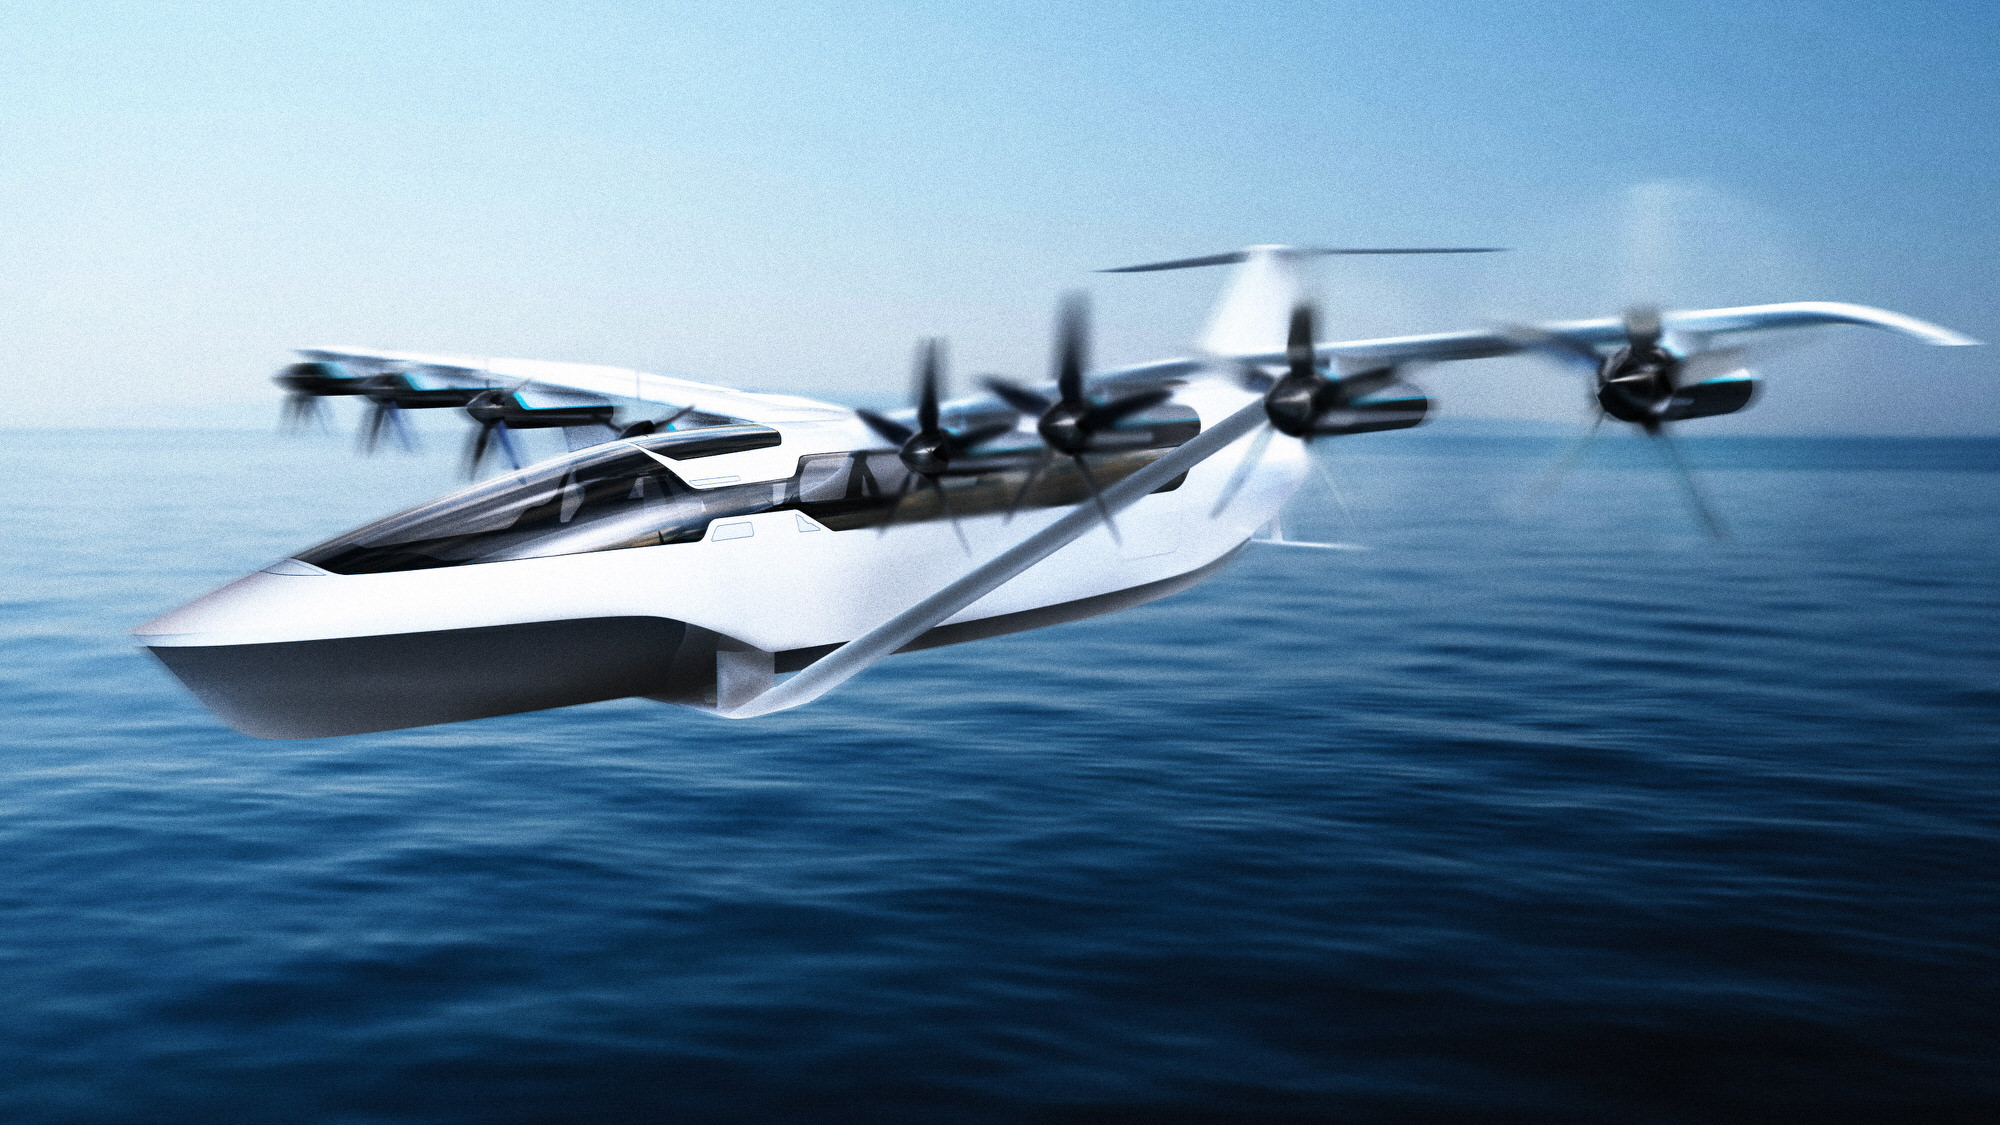 ماشین پرنده برقی seaglider ،سرعت، راحتی و سیستم های مسیریابی یک هواپیما را با تسهیلات، مانور بالا و ارزانی قایق ترکیب کرده است.